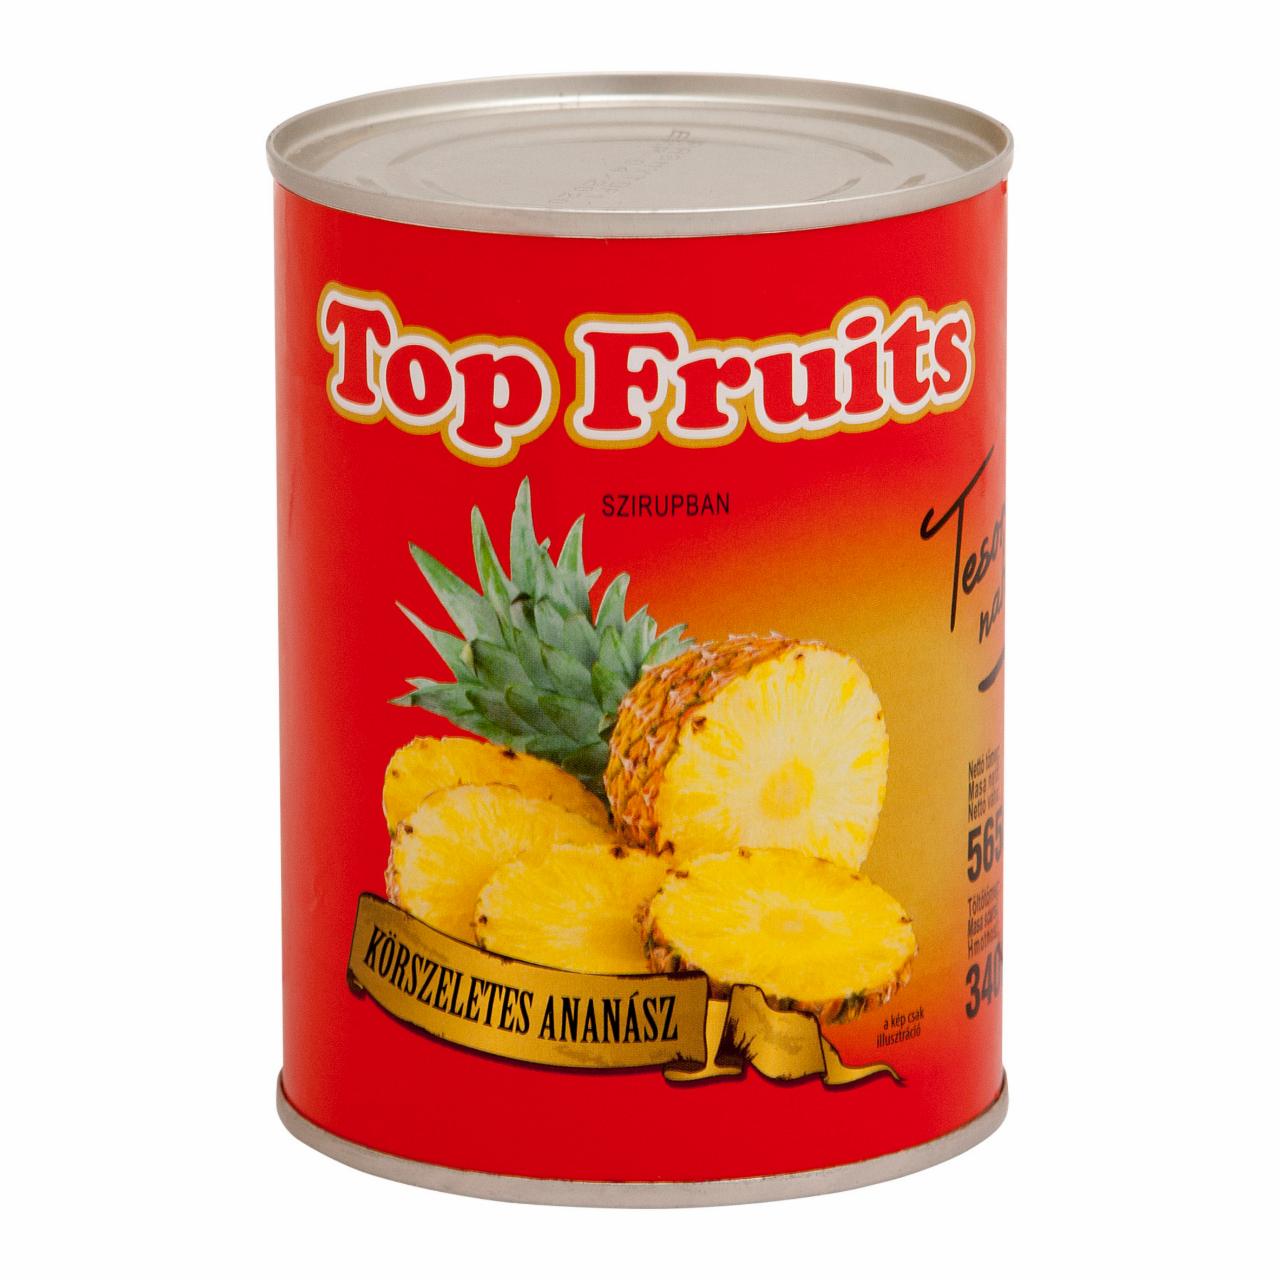 Képek - TOP FRUITS ananász körszeletes szirupban 565 g